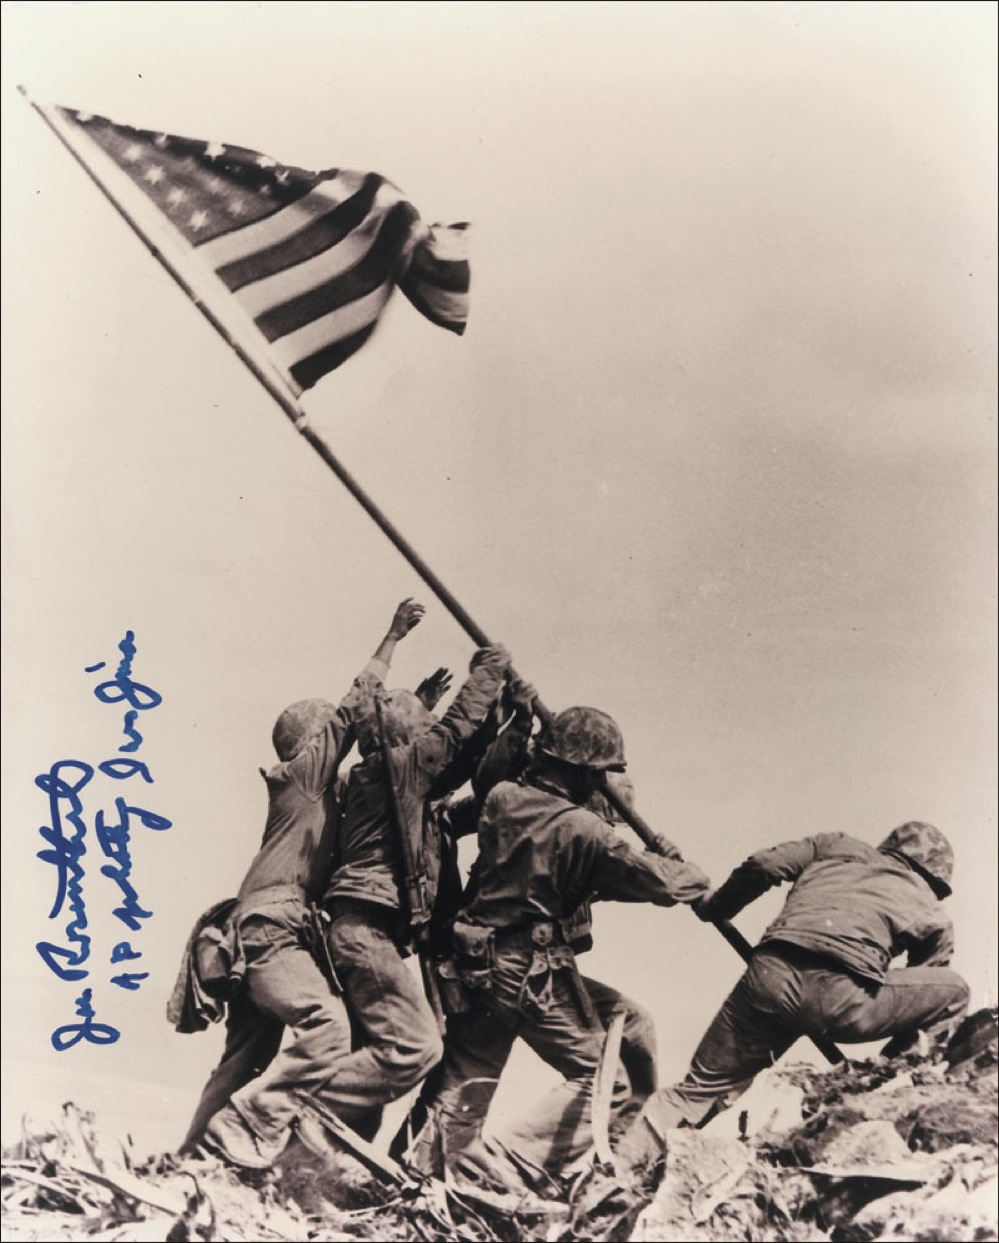 Lot #433 Iwo Jima: Joe Rosenthal